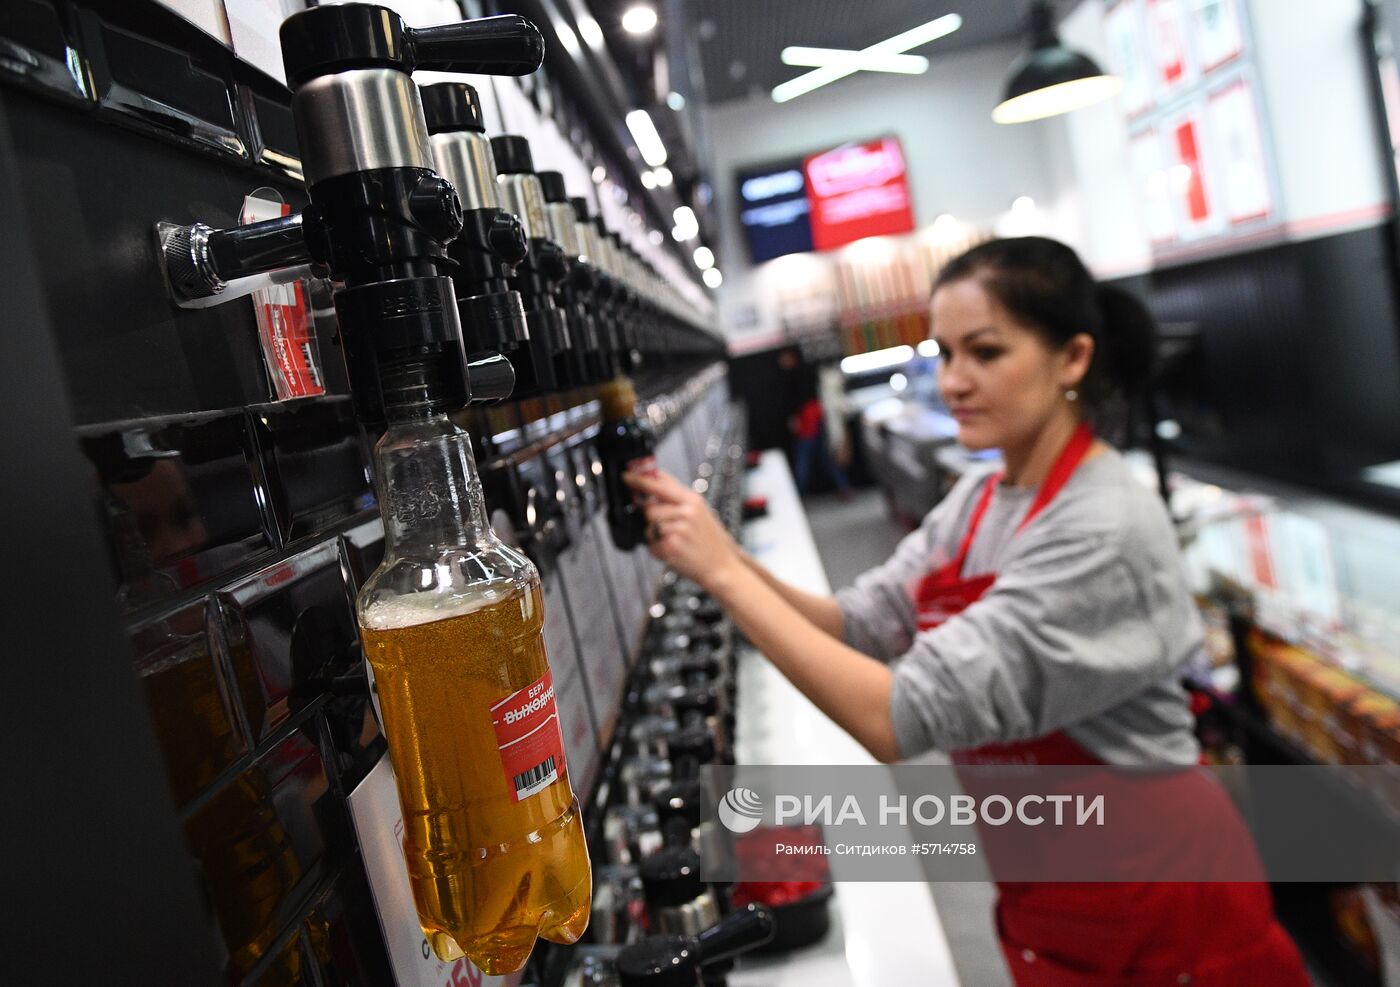 В Москве открылся флагманский магазин сети "Беру выходной"